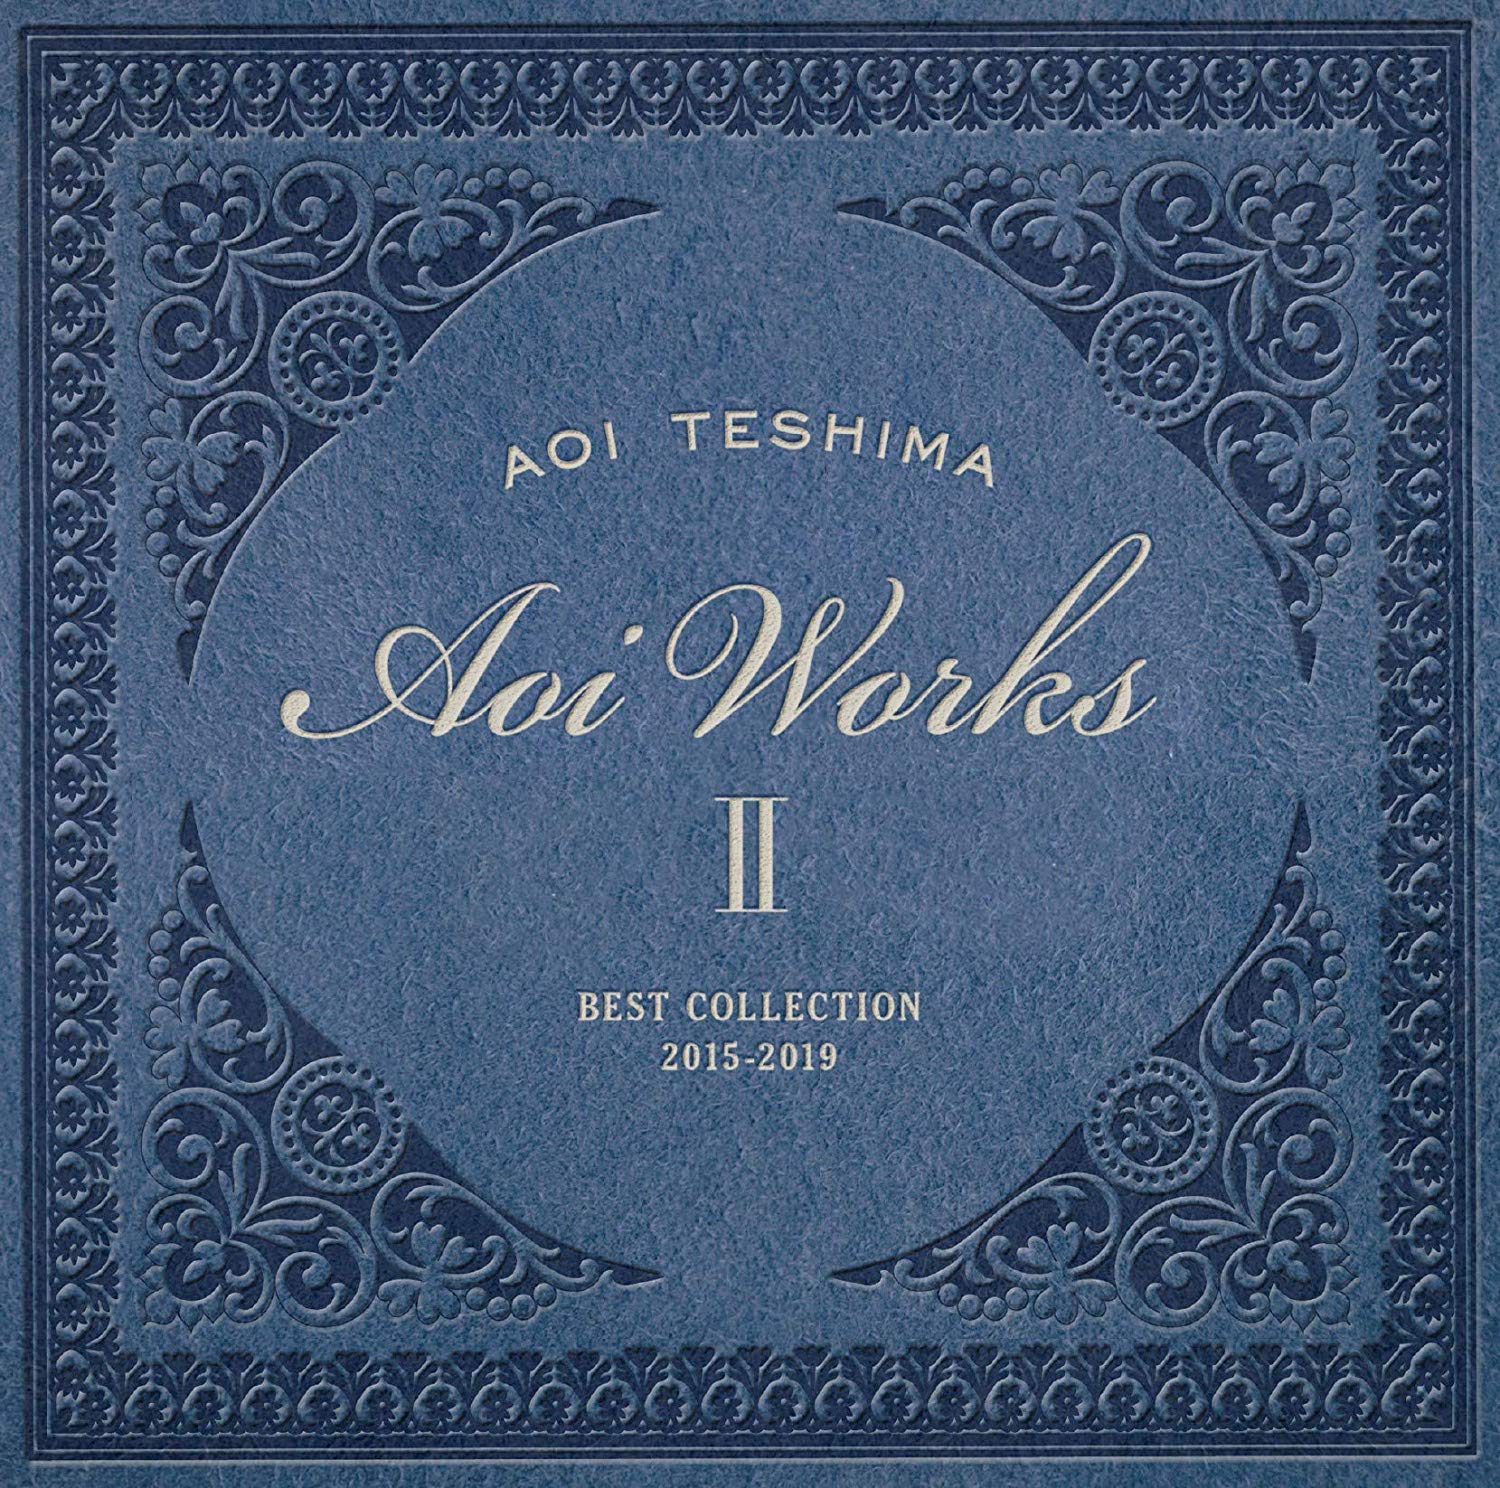 Audio Cd Aoi Teshima - Aoi Works 2 Best Collection '15-'19 9 NUOVO SIGILLATO, EDIZIONE DEL 12/04/2019 SUBITO DISPONIBILE